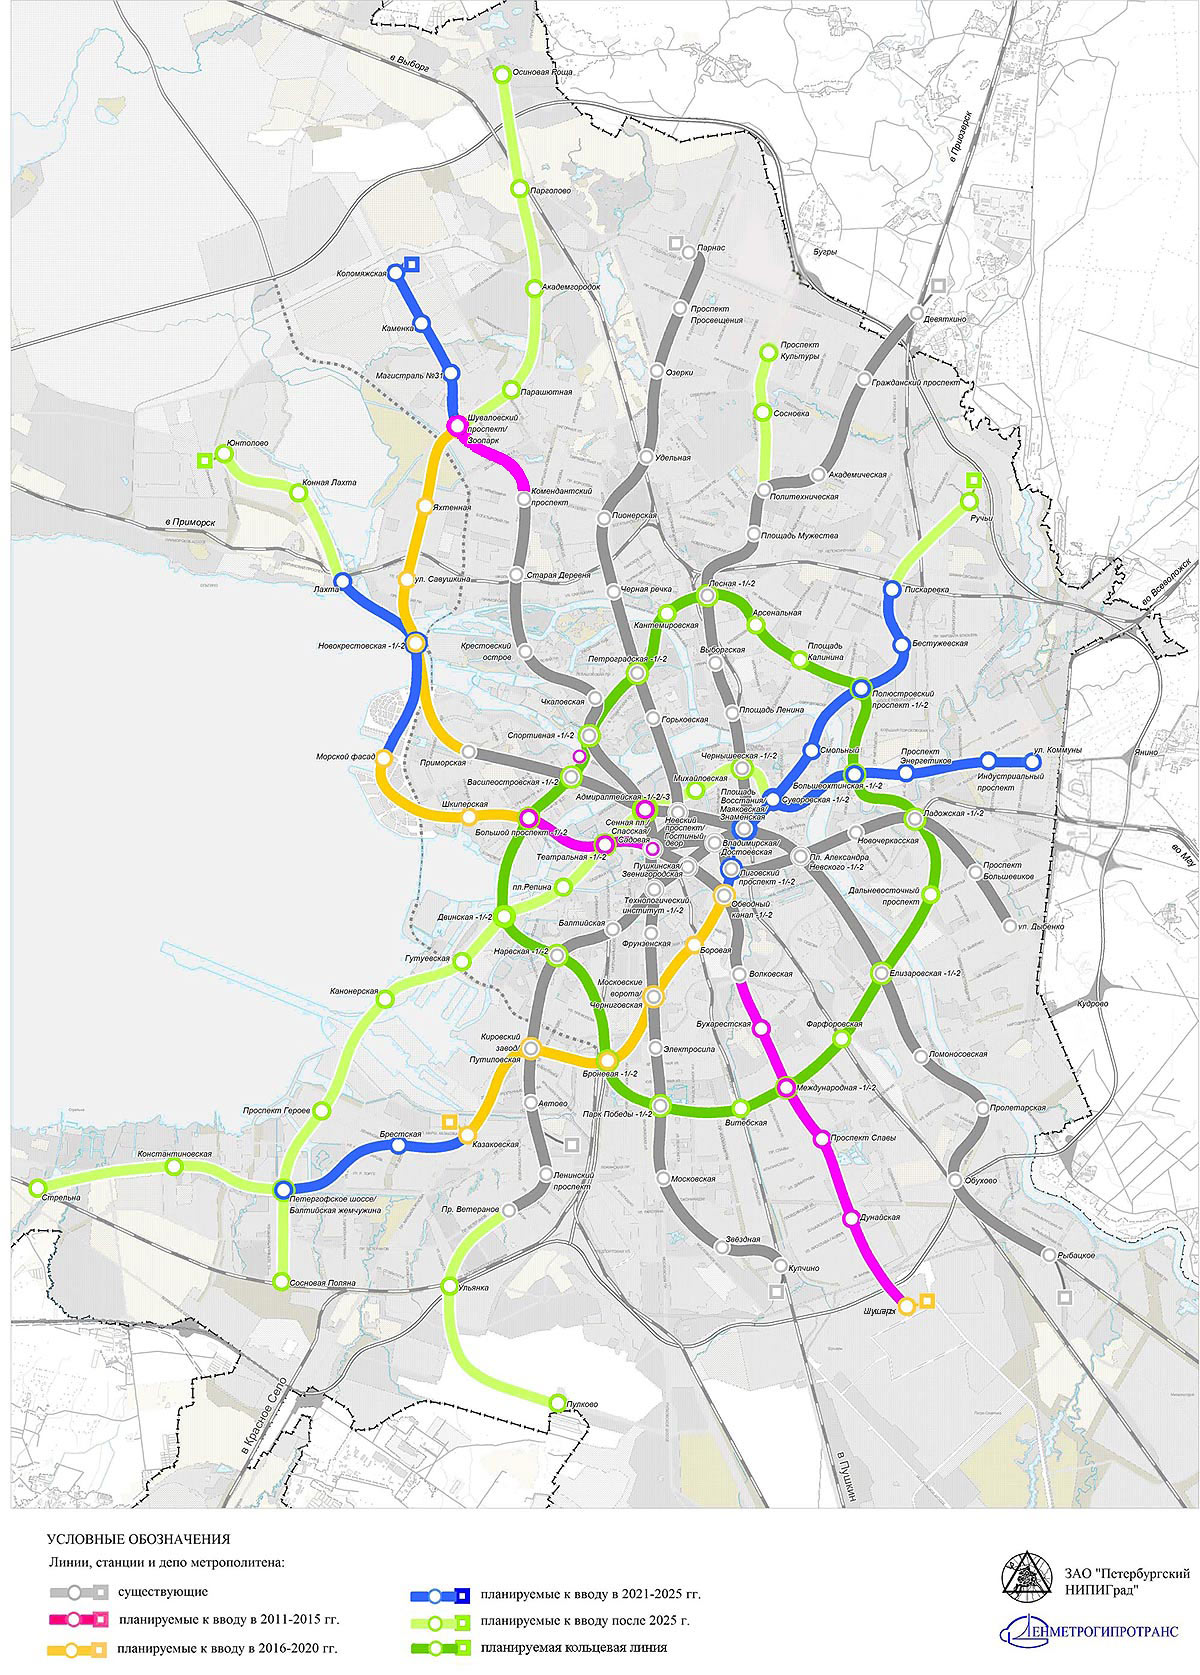 схема метро развития